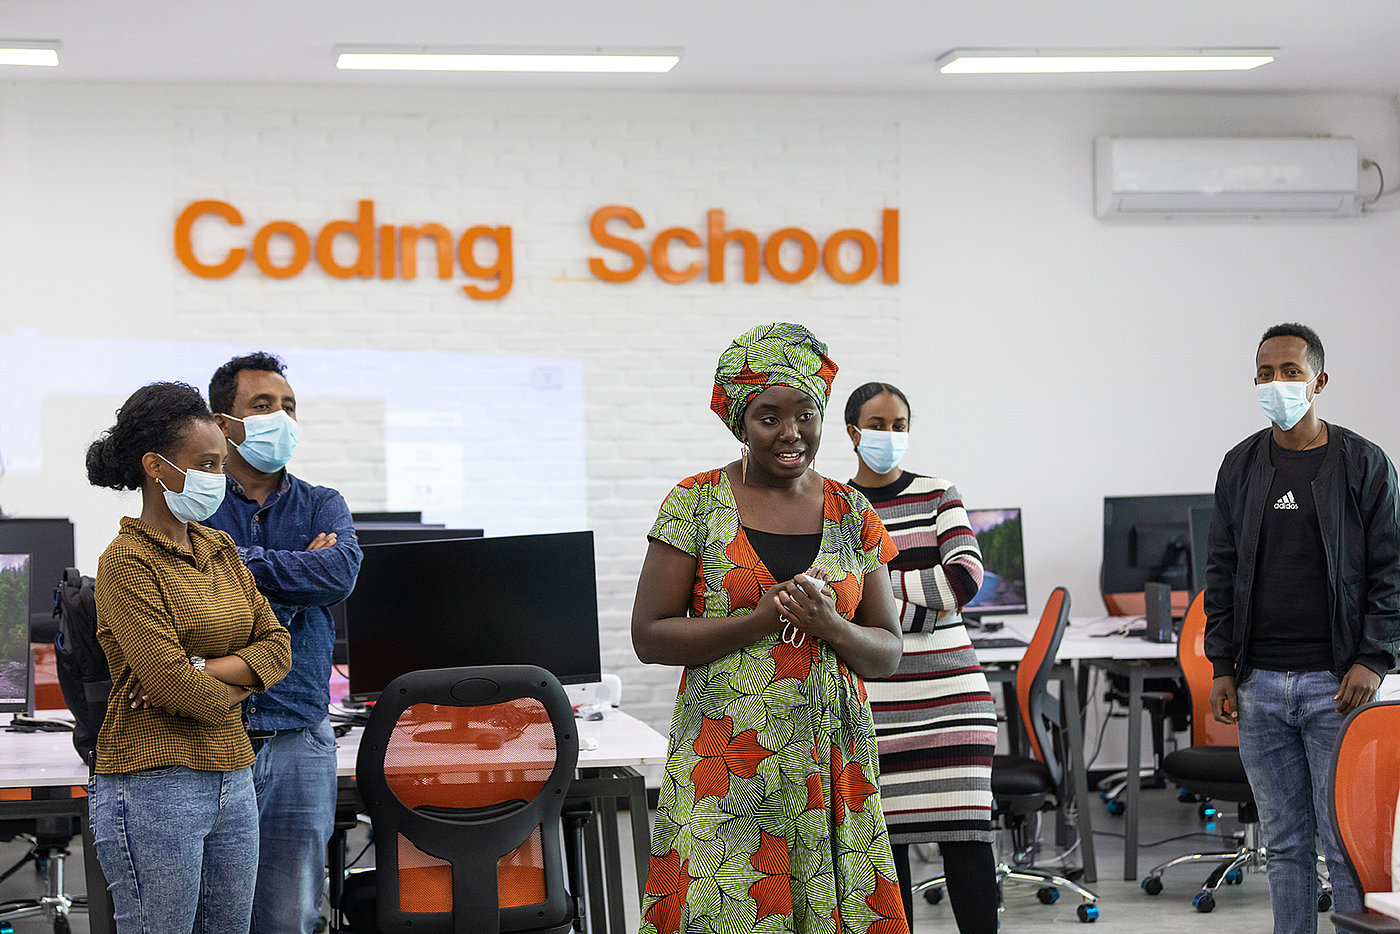 Foto: Eine Frau steht in der Mitte eines Raumes und spricht. Kreisförmig stehen weitere Personen um sie herum; alle tragen eine OP-Maske. Im Hintergrund der Schriftzug „Coding School“ an der Wand.